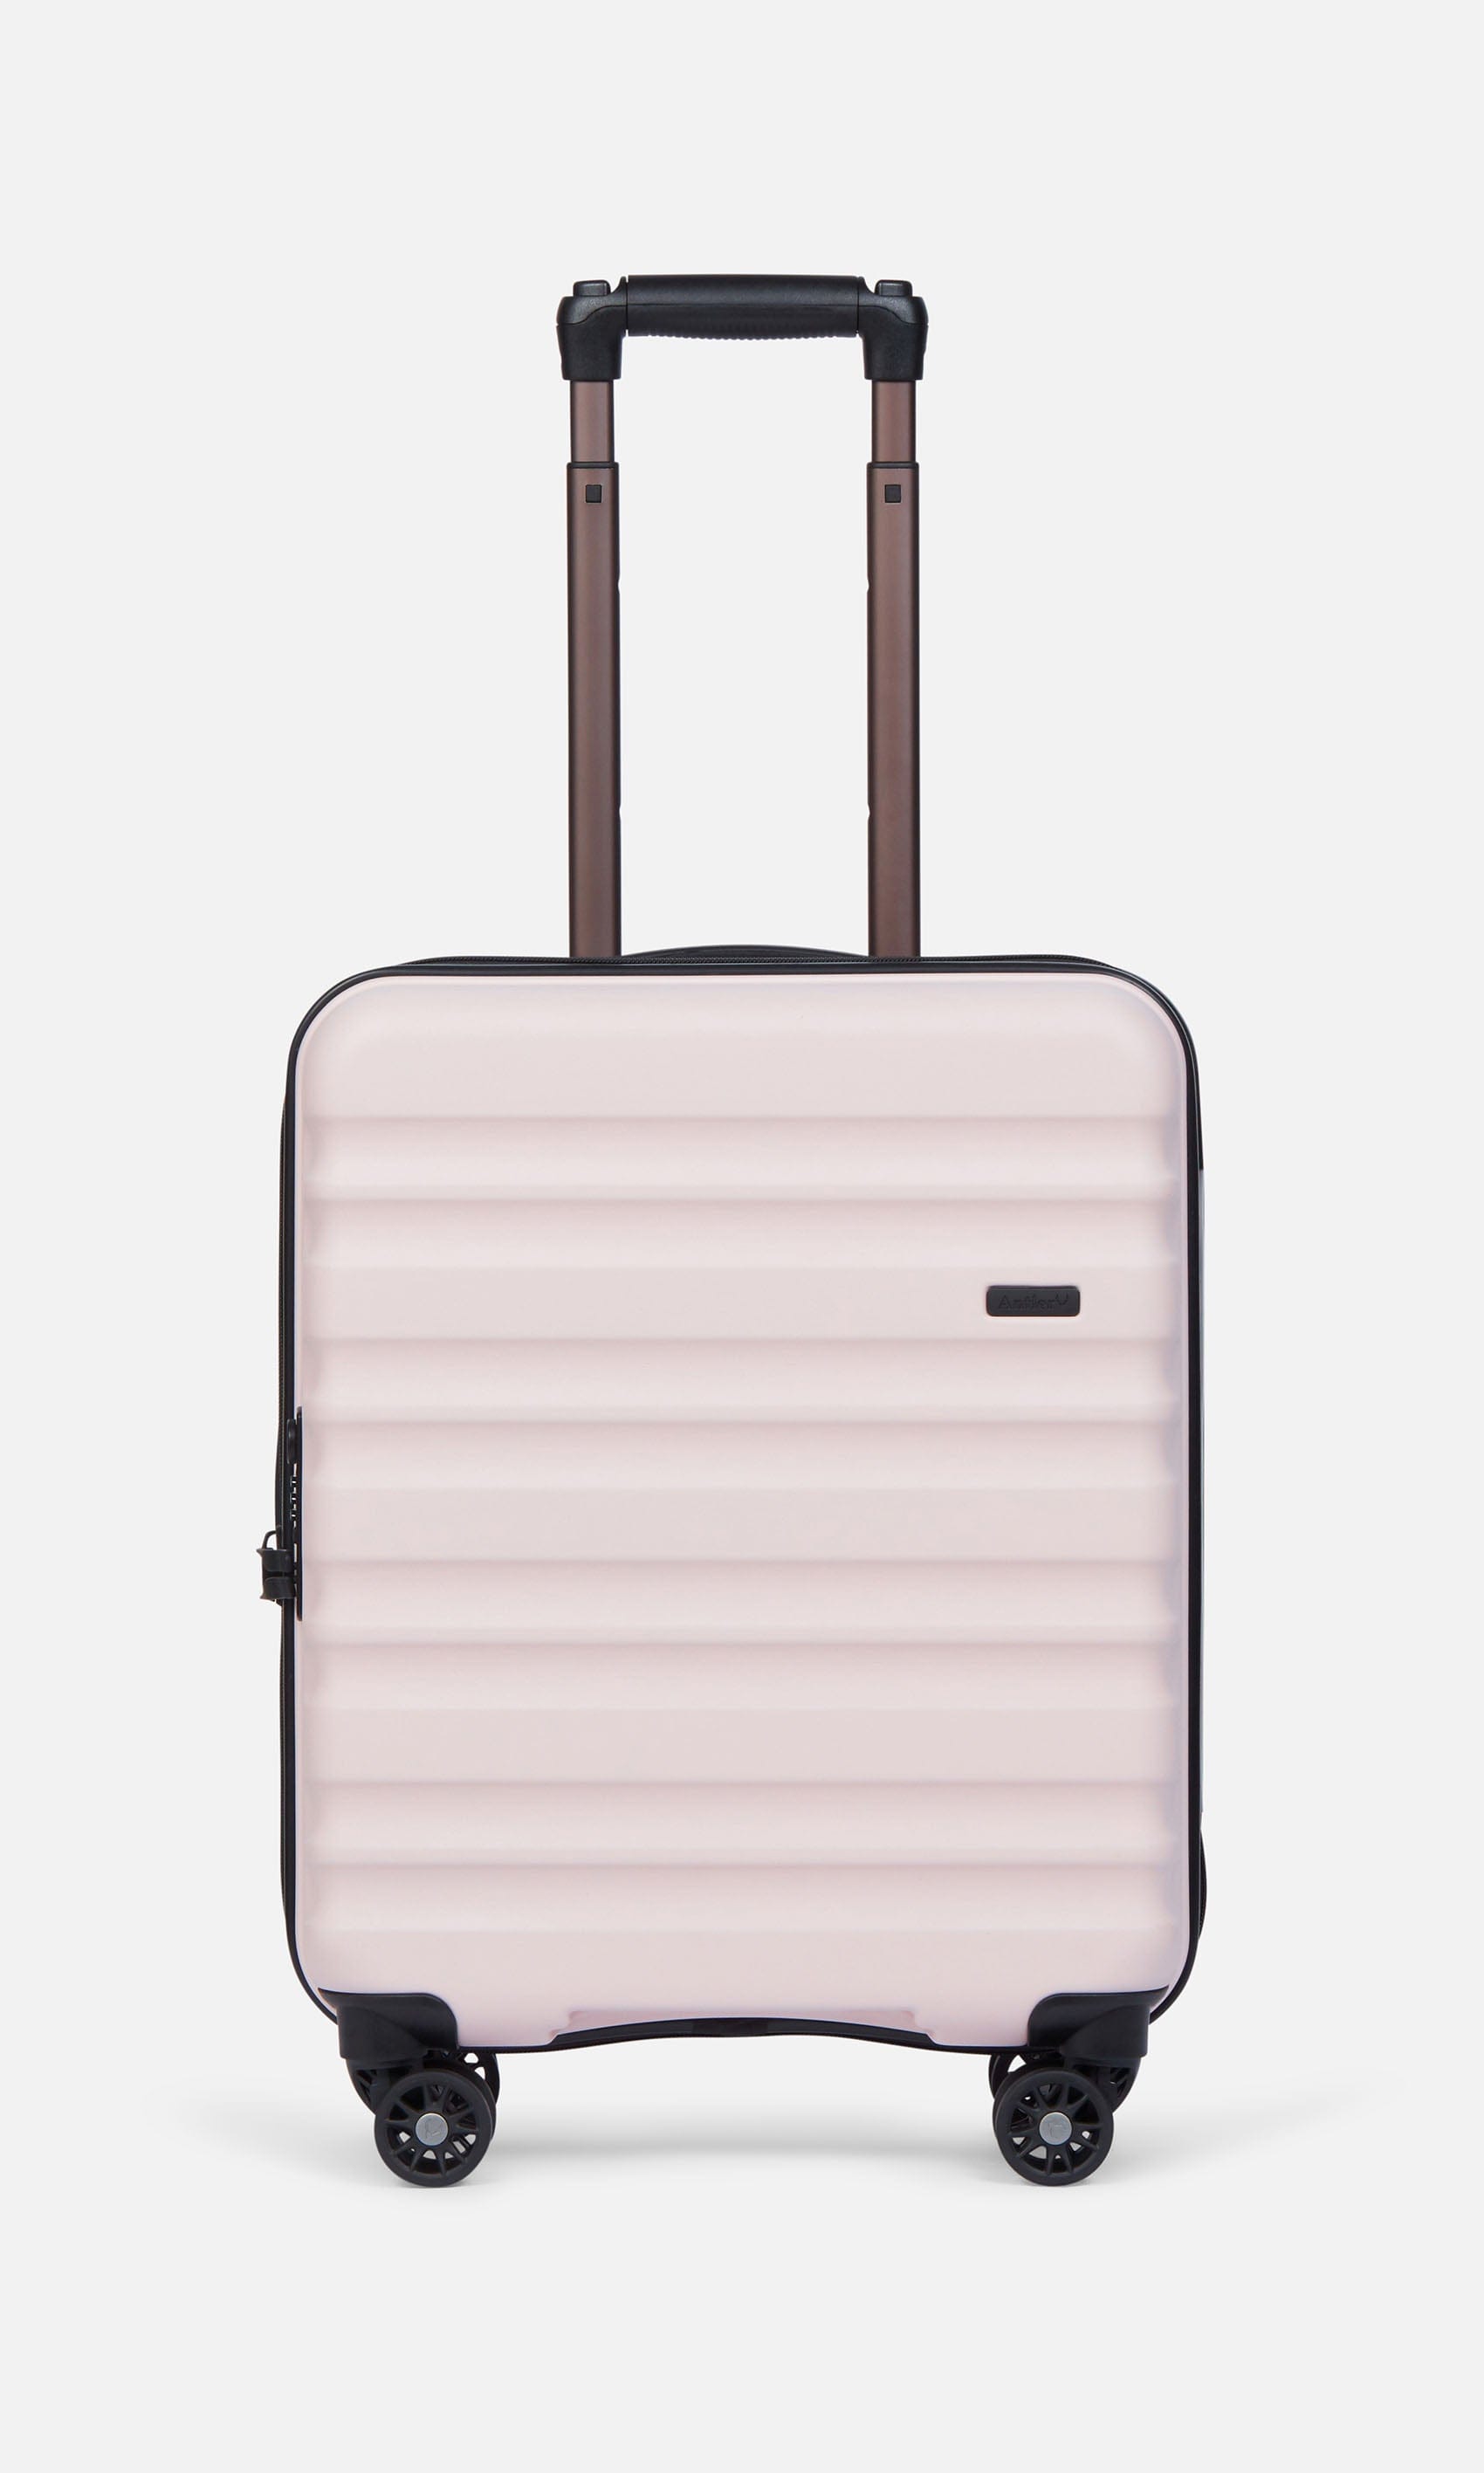 Antler Luggage -  Clifton set in blush - Hard Suitcases Clifton Set of 3 Suitcases Blush (Pink) | Hard Suitcase | Antler UK